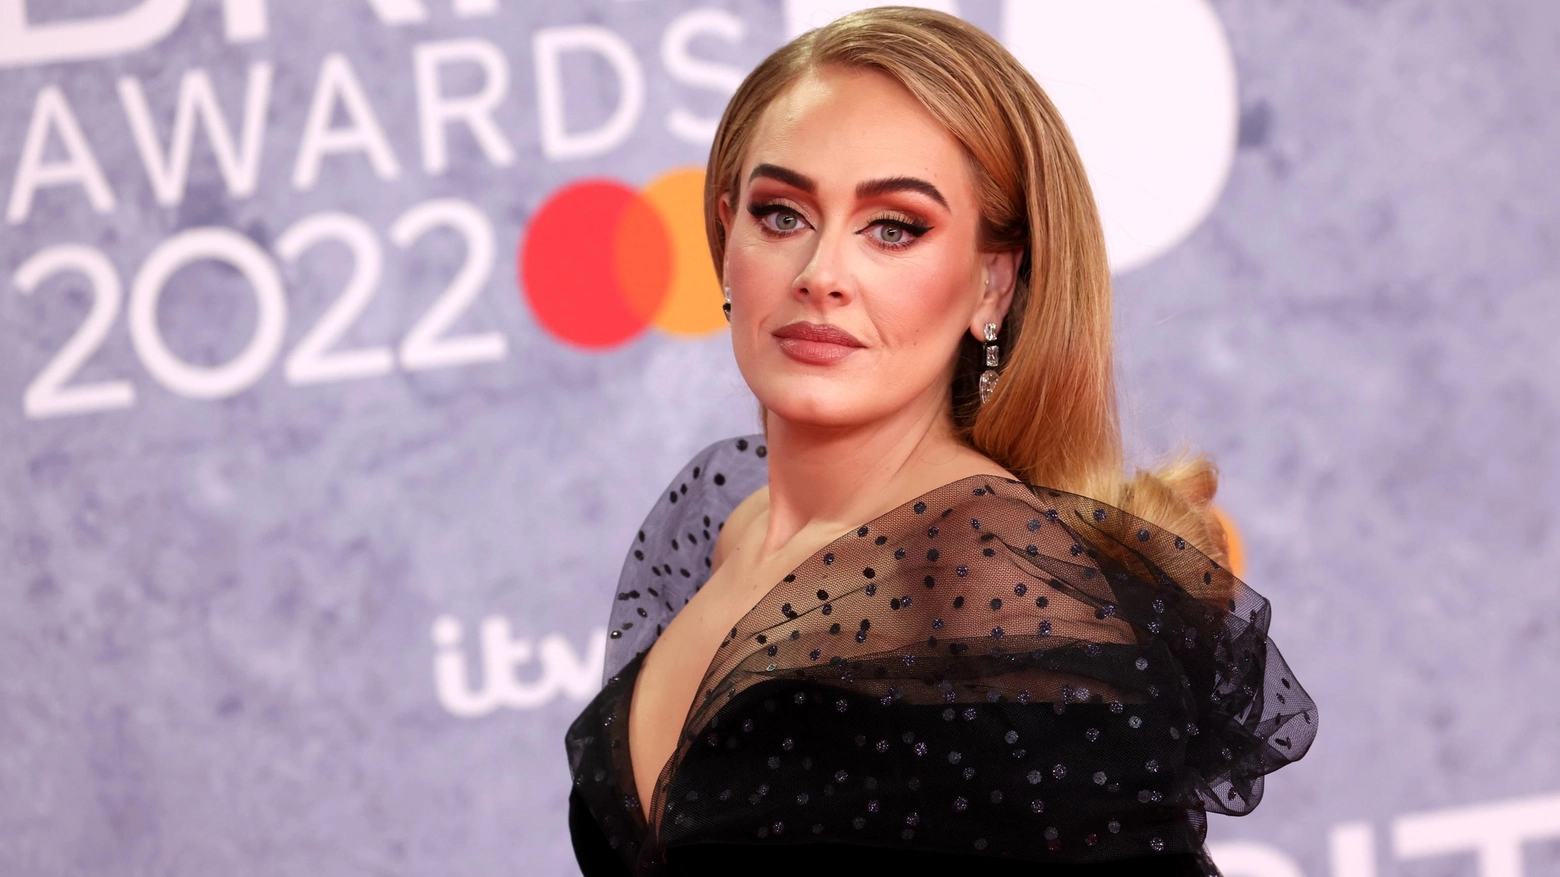 Adele al Brit Awards 2022 - Crediti Ansa Foto